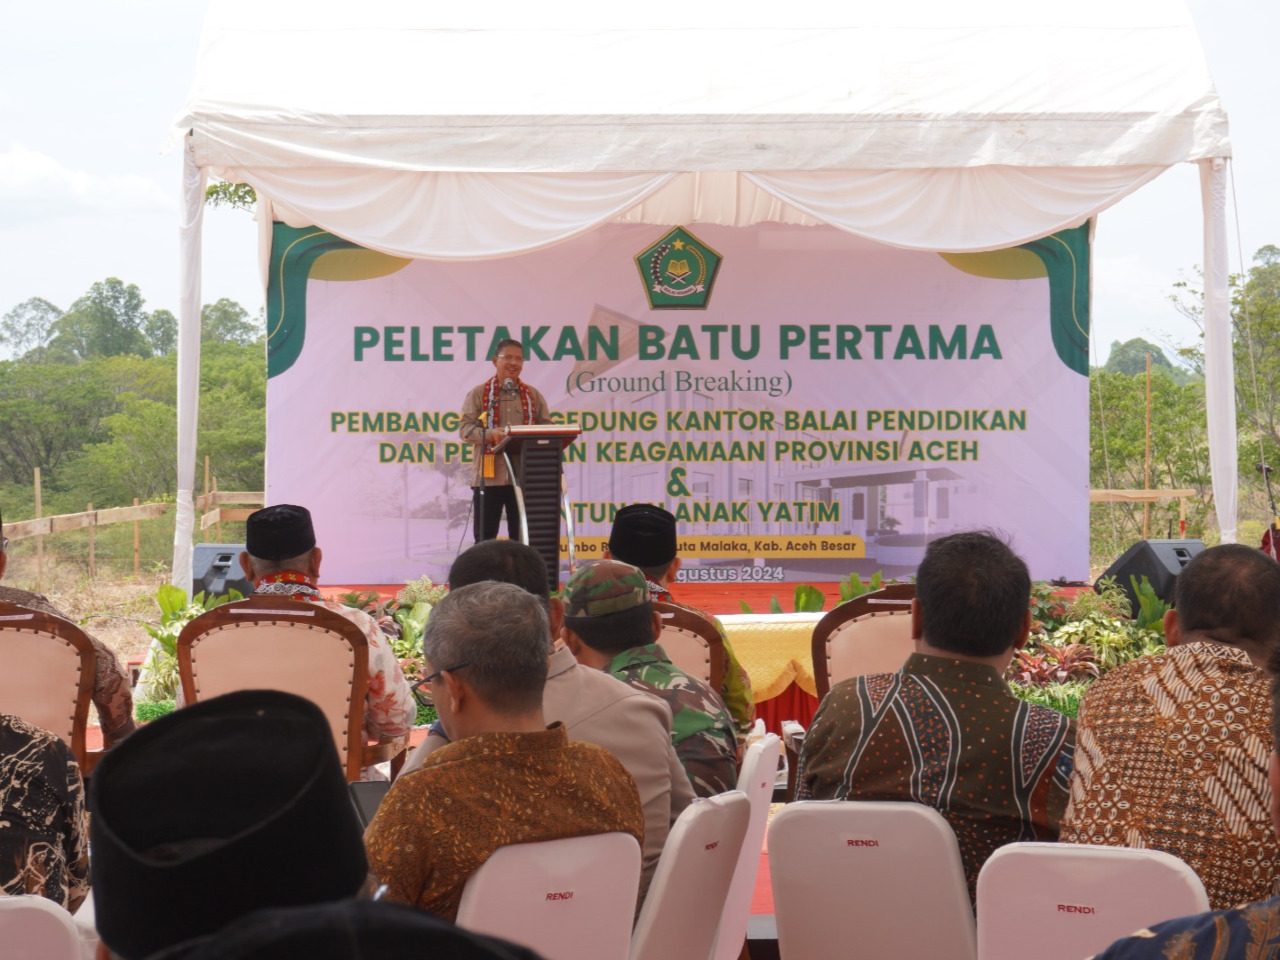 Legasi bagi Masyarakat Aceh, Ini Pesan pada Pembangunan BDK